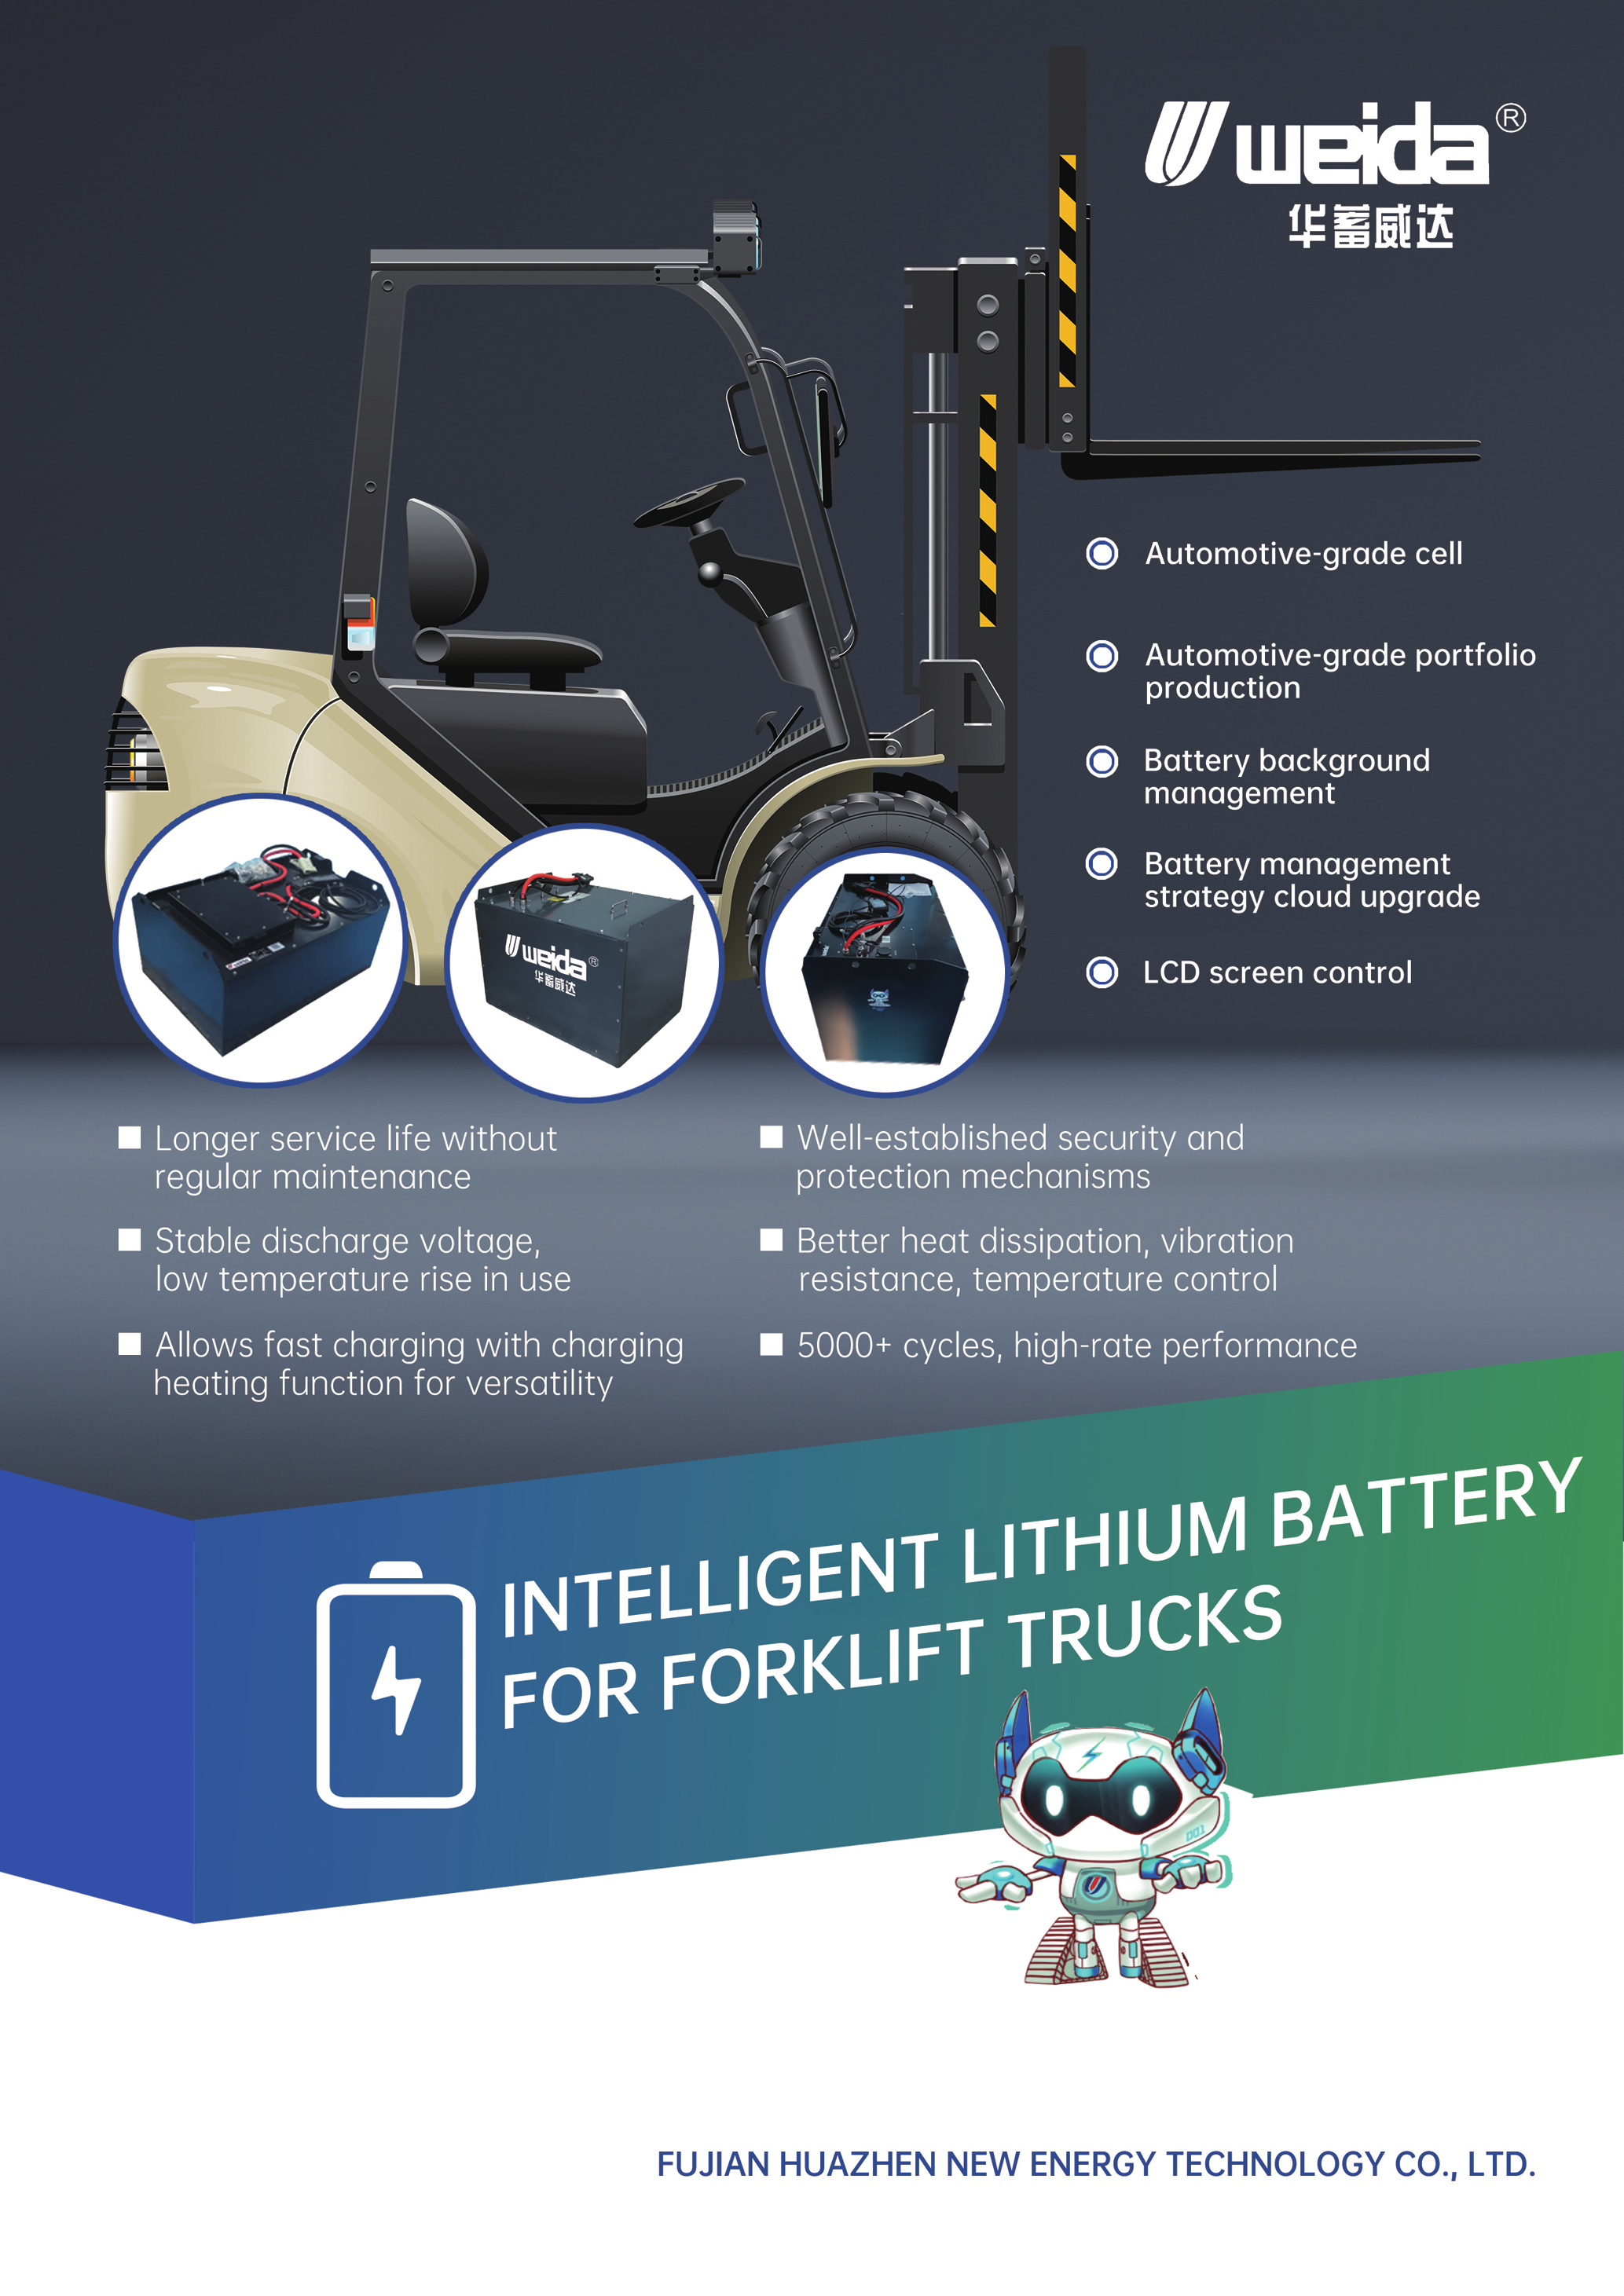 Bateria de lítio inteligente para empilhadeiras